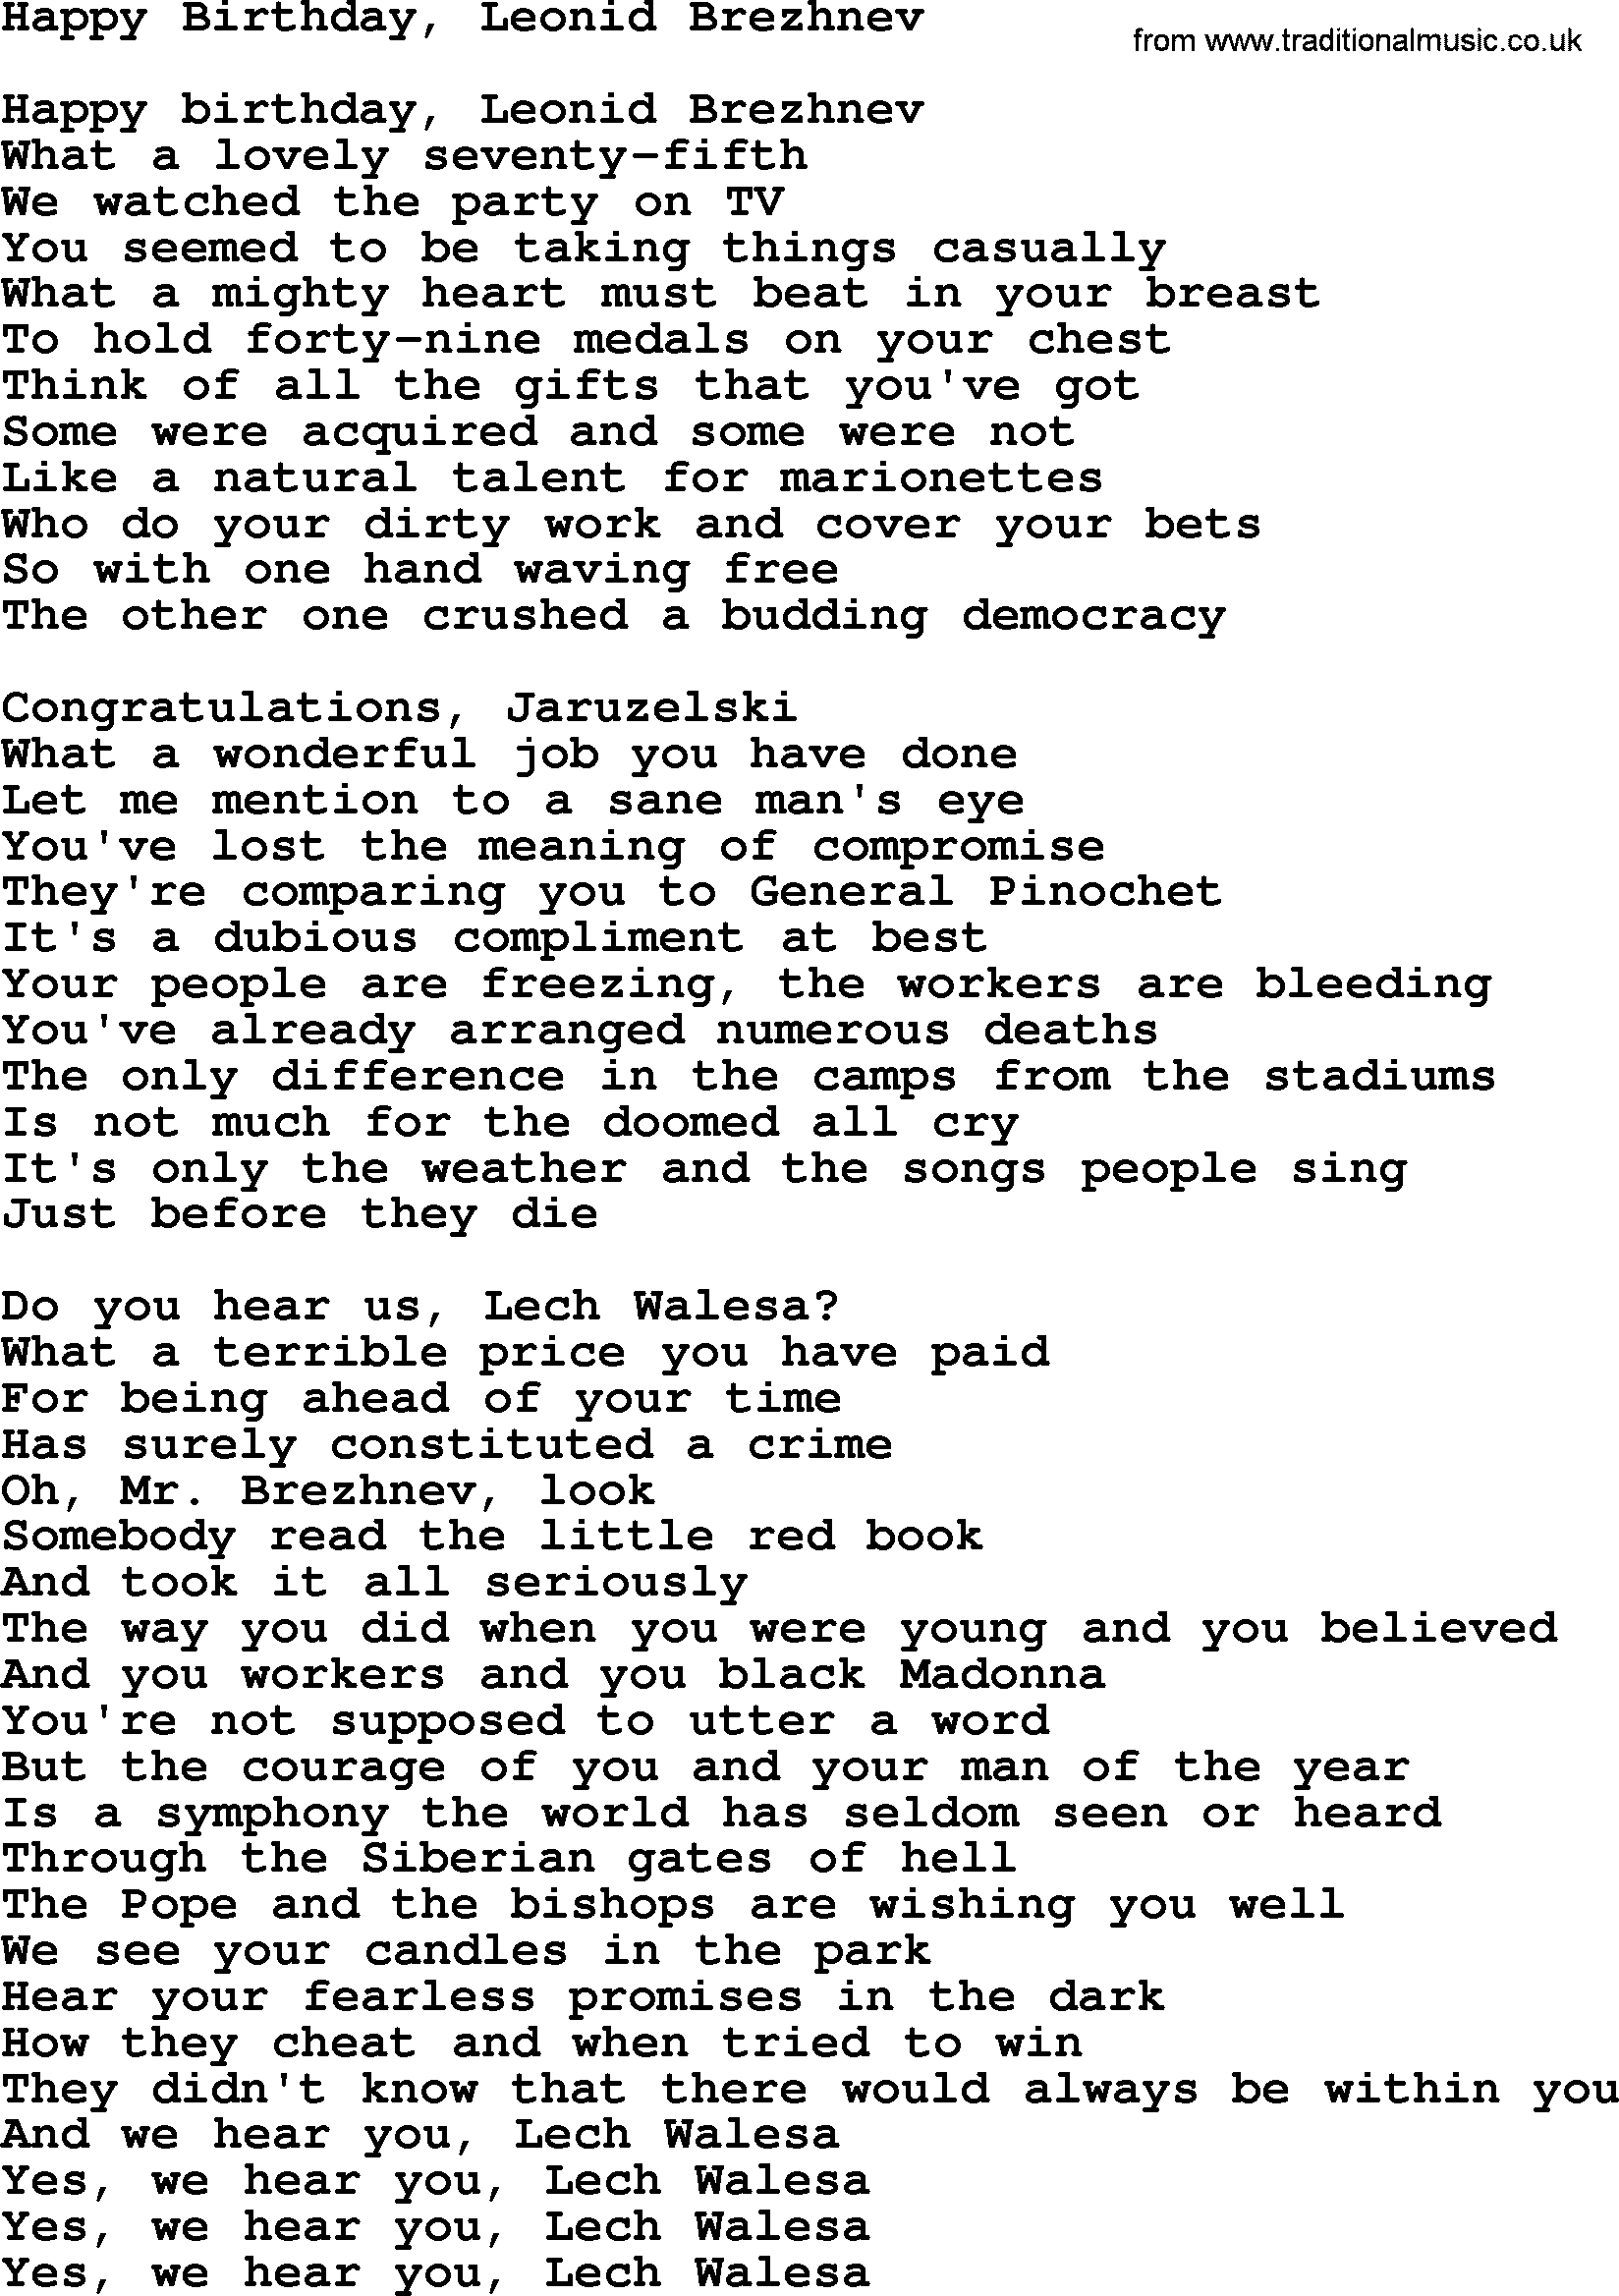 Joan Baez song Happy Birthday, Leonid Brezhnev, lyrics